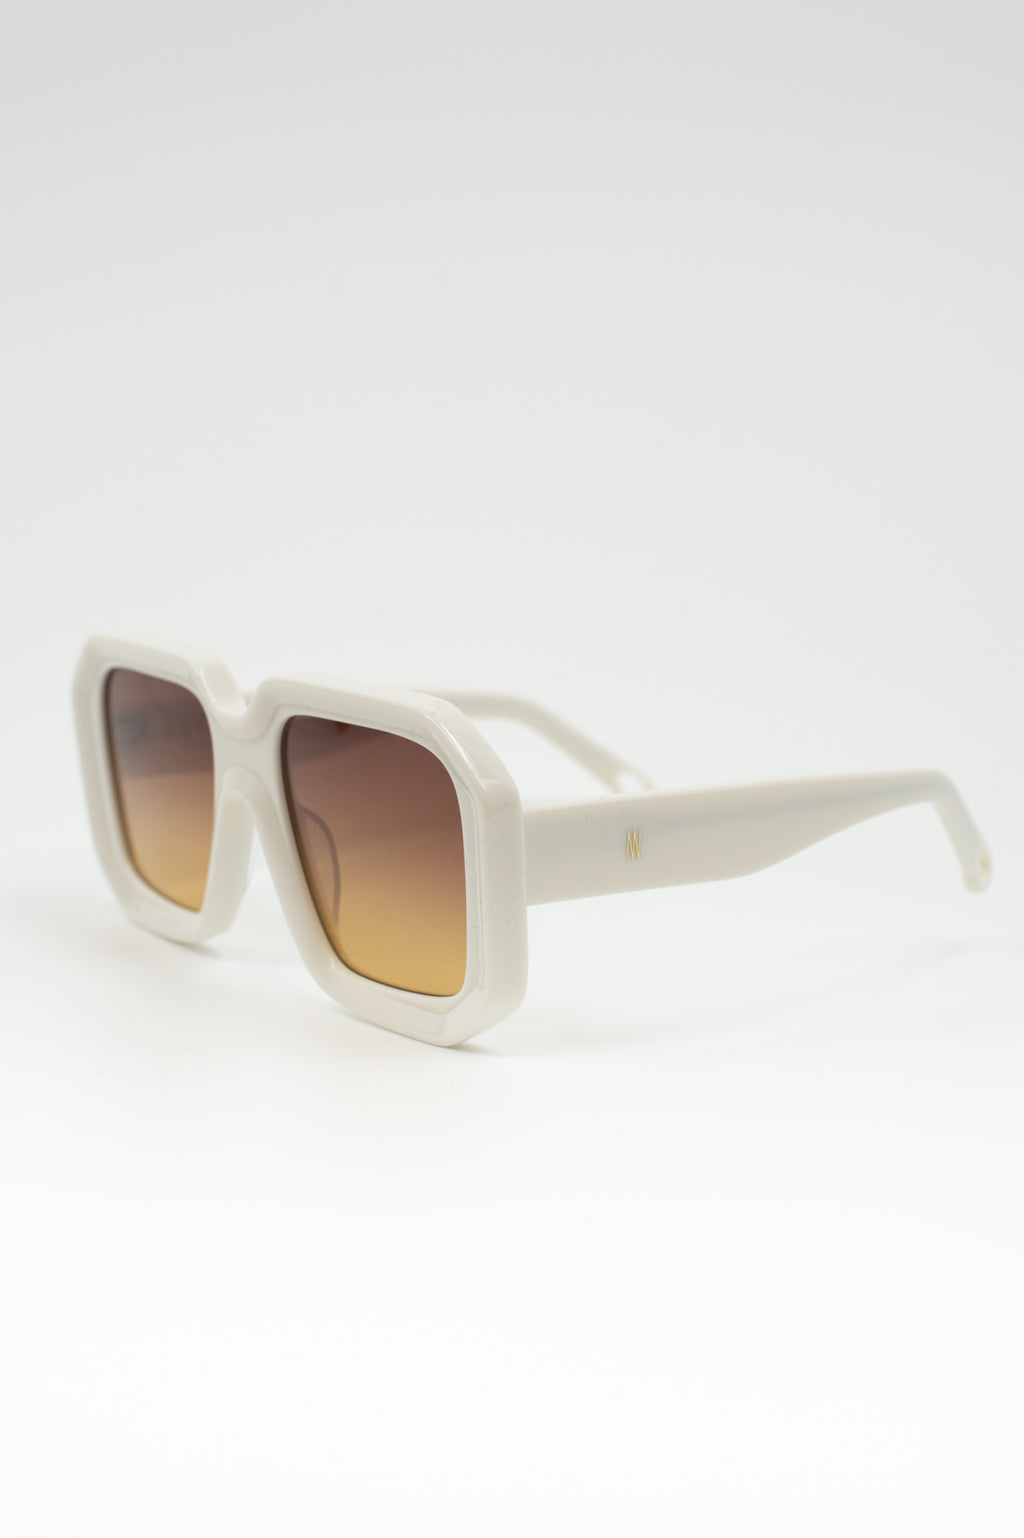 Onassis sunglasses cream / yellow